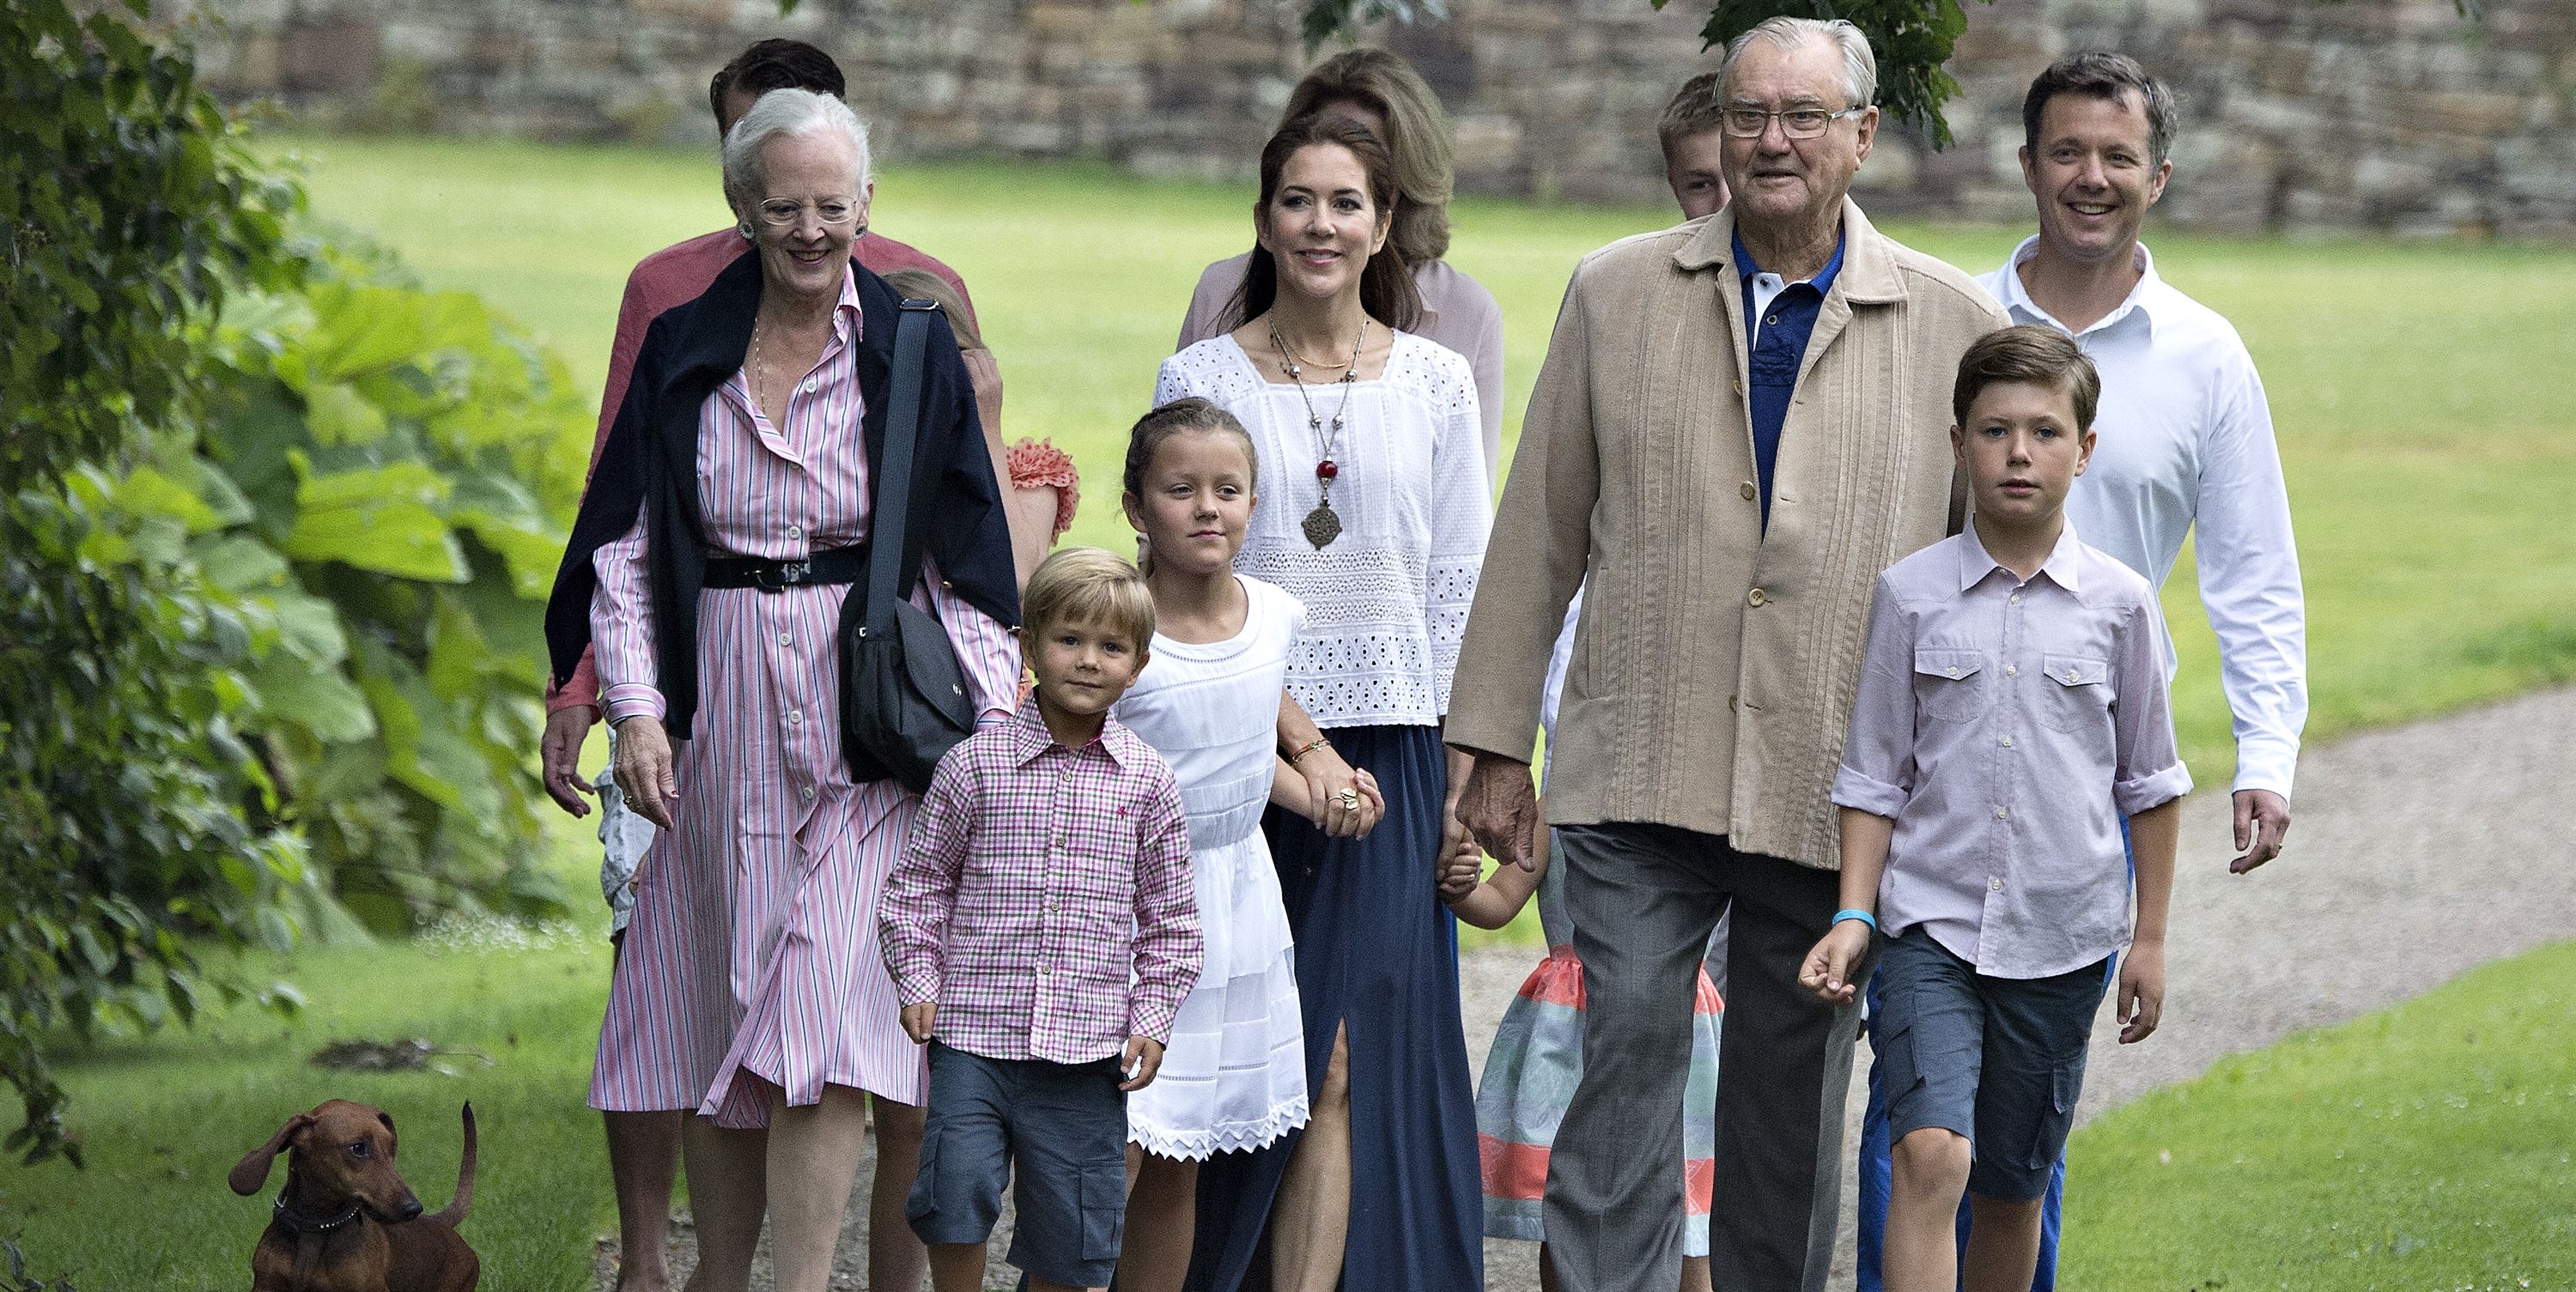 Жизнь обычной семьи глава 27. Ингольф, принц датский. Королевская семья Дании. Королевская семья в обычной жизни. Семья в Британии.